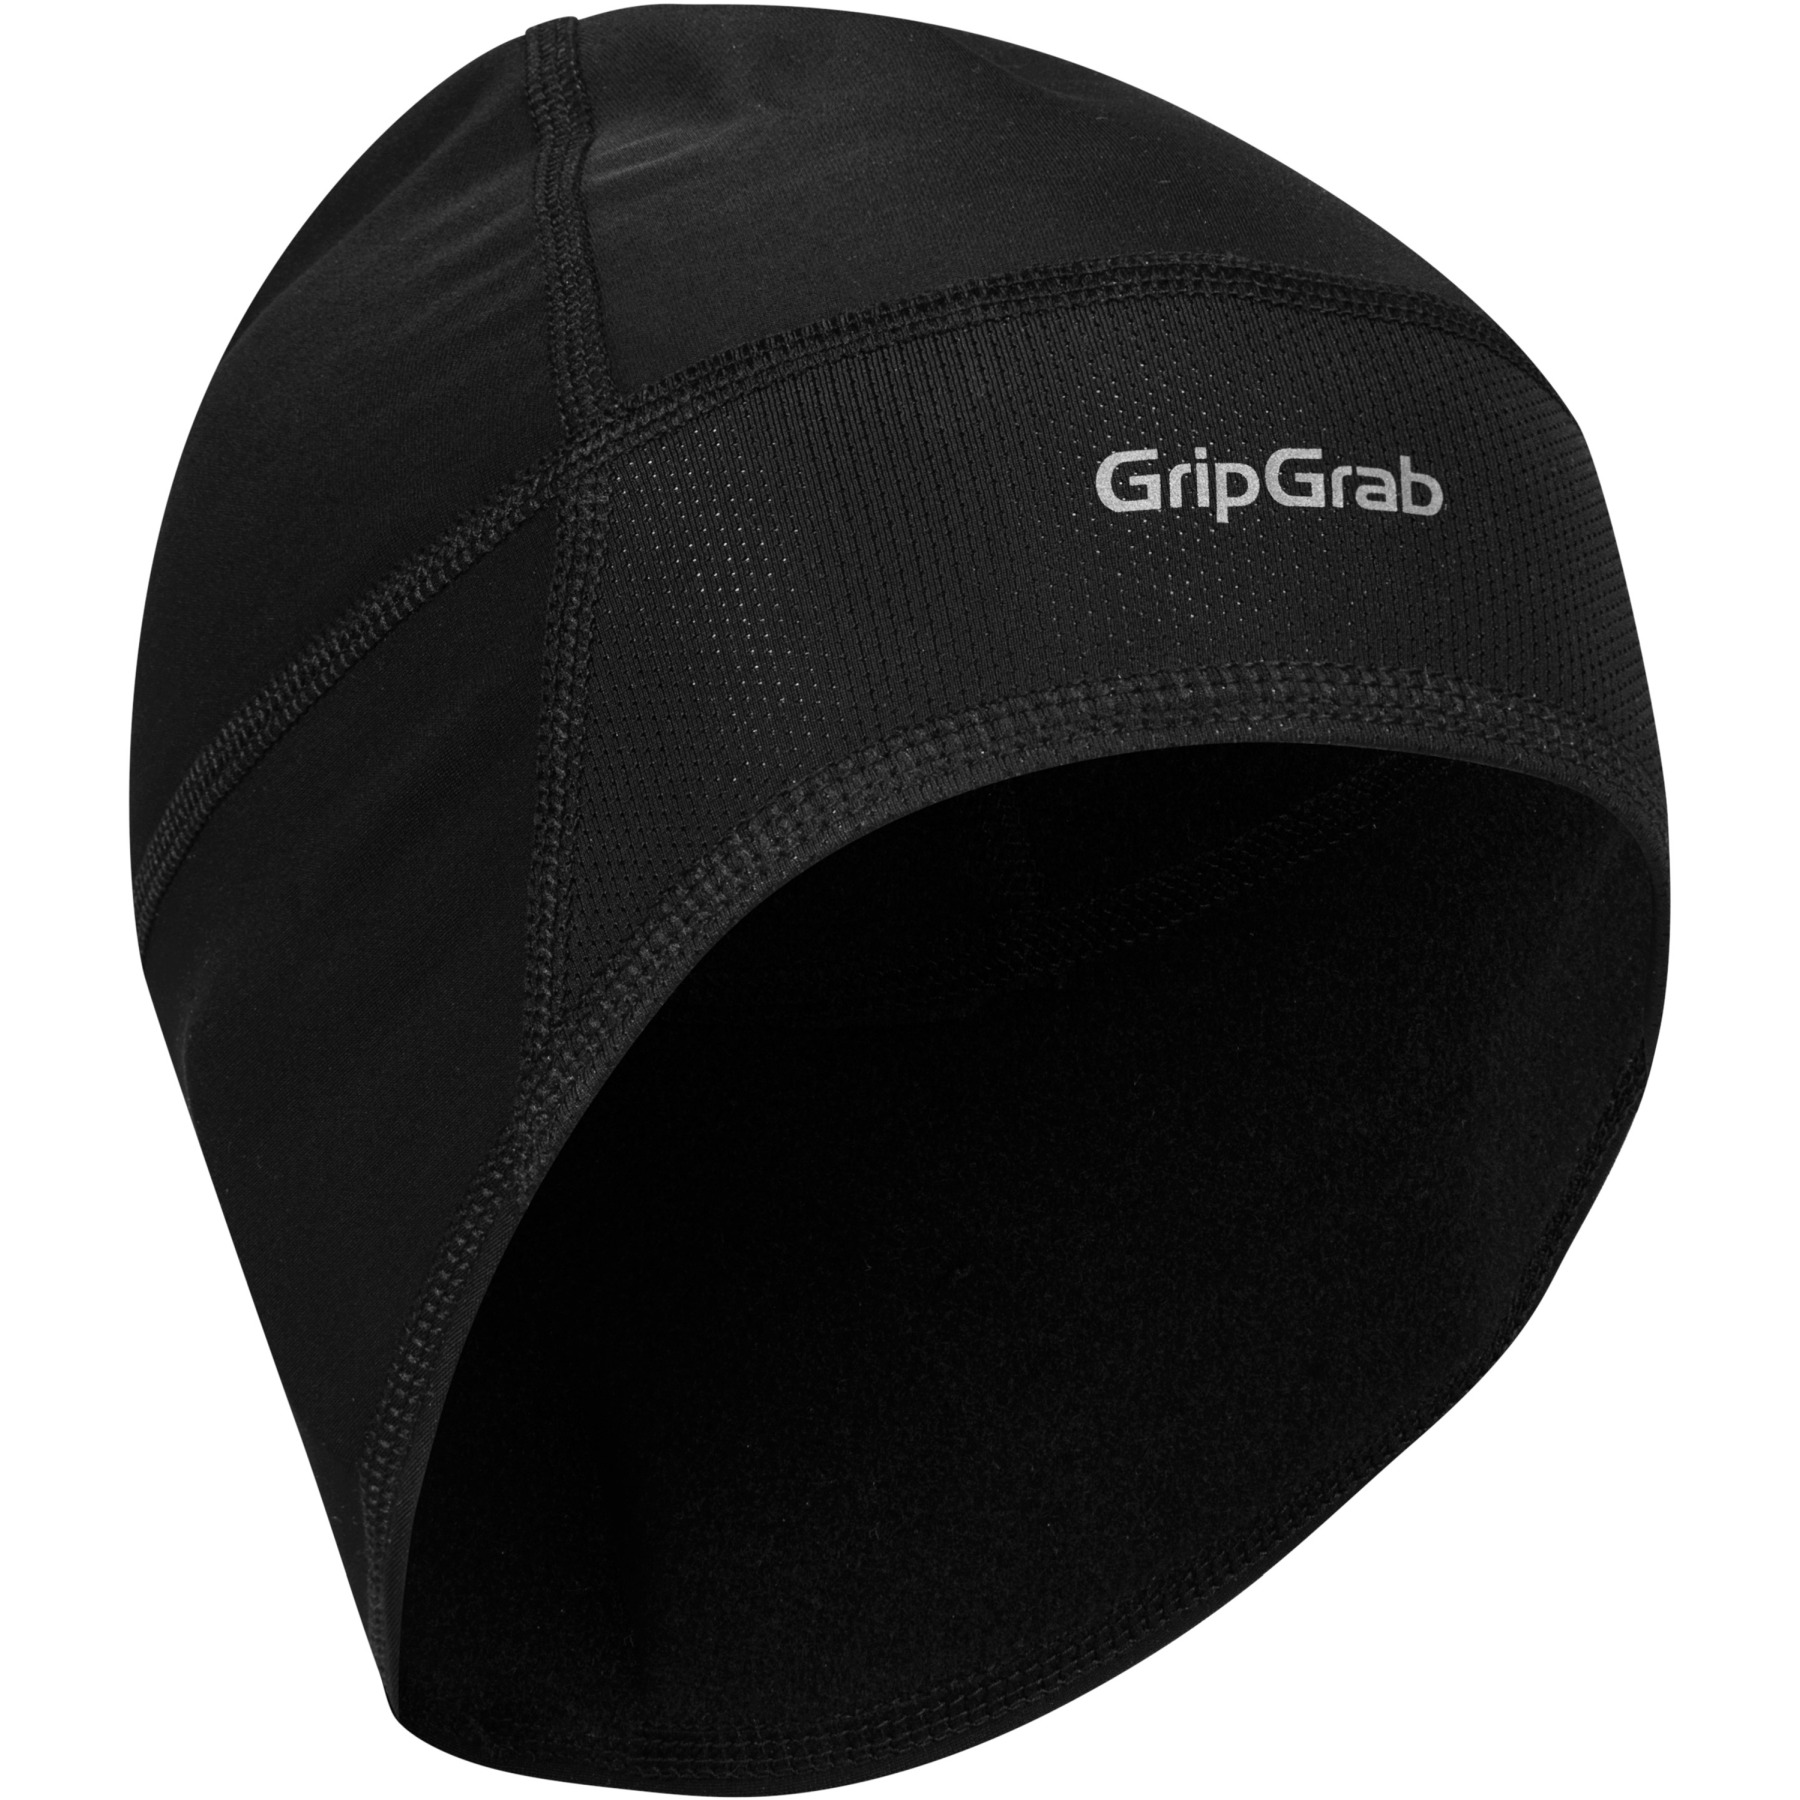 Produktbild von GripGrab Winddichte Leichte Thermal Unterhelm Mütze - Black